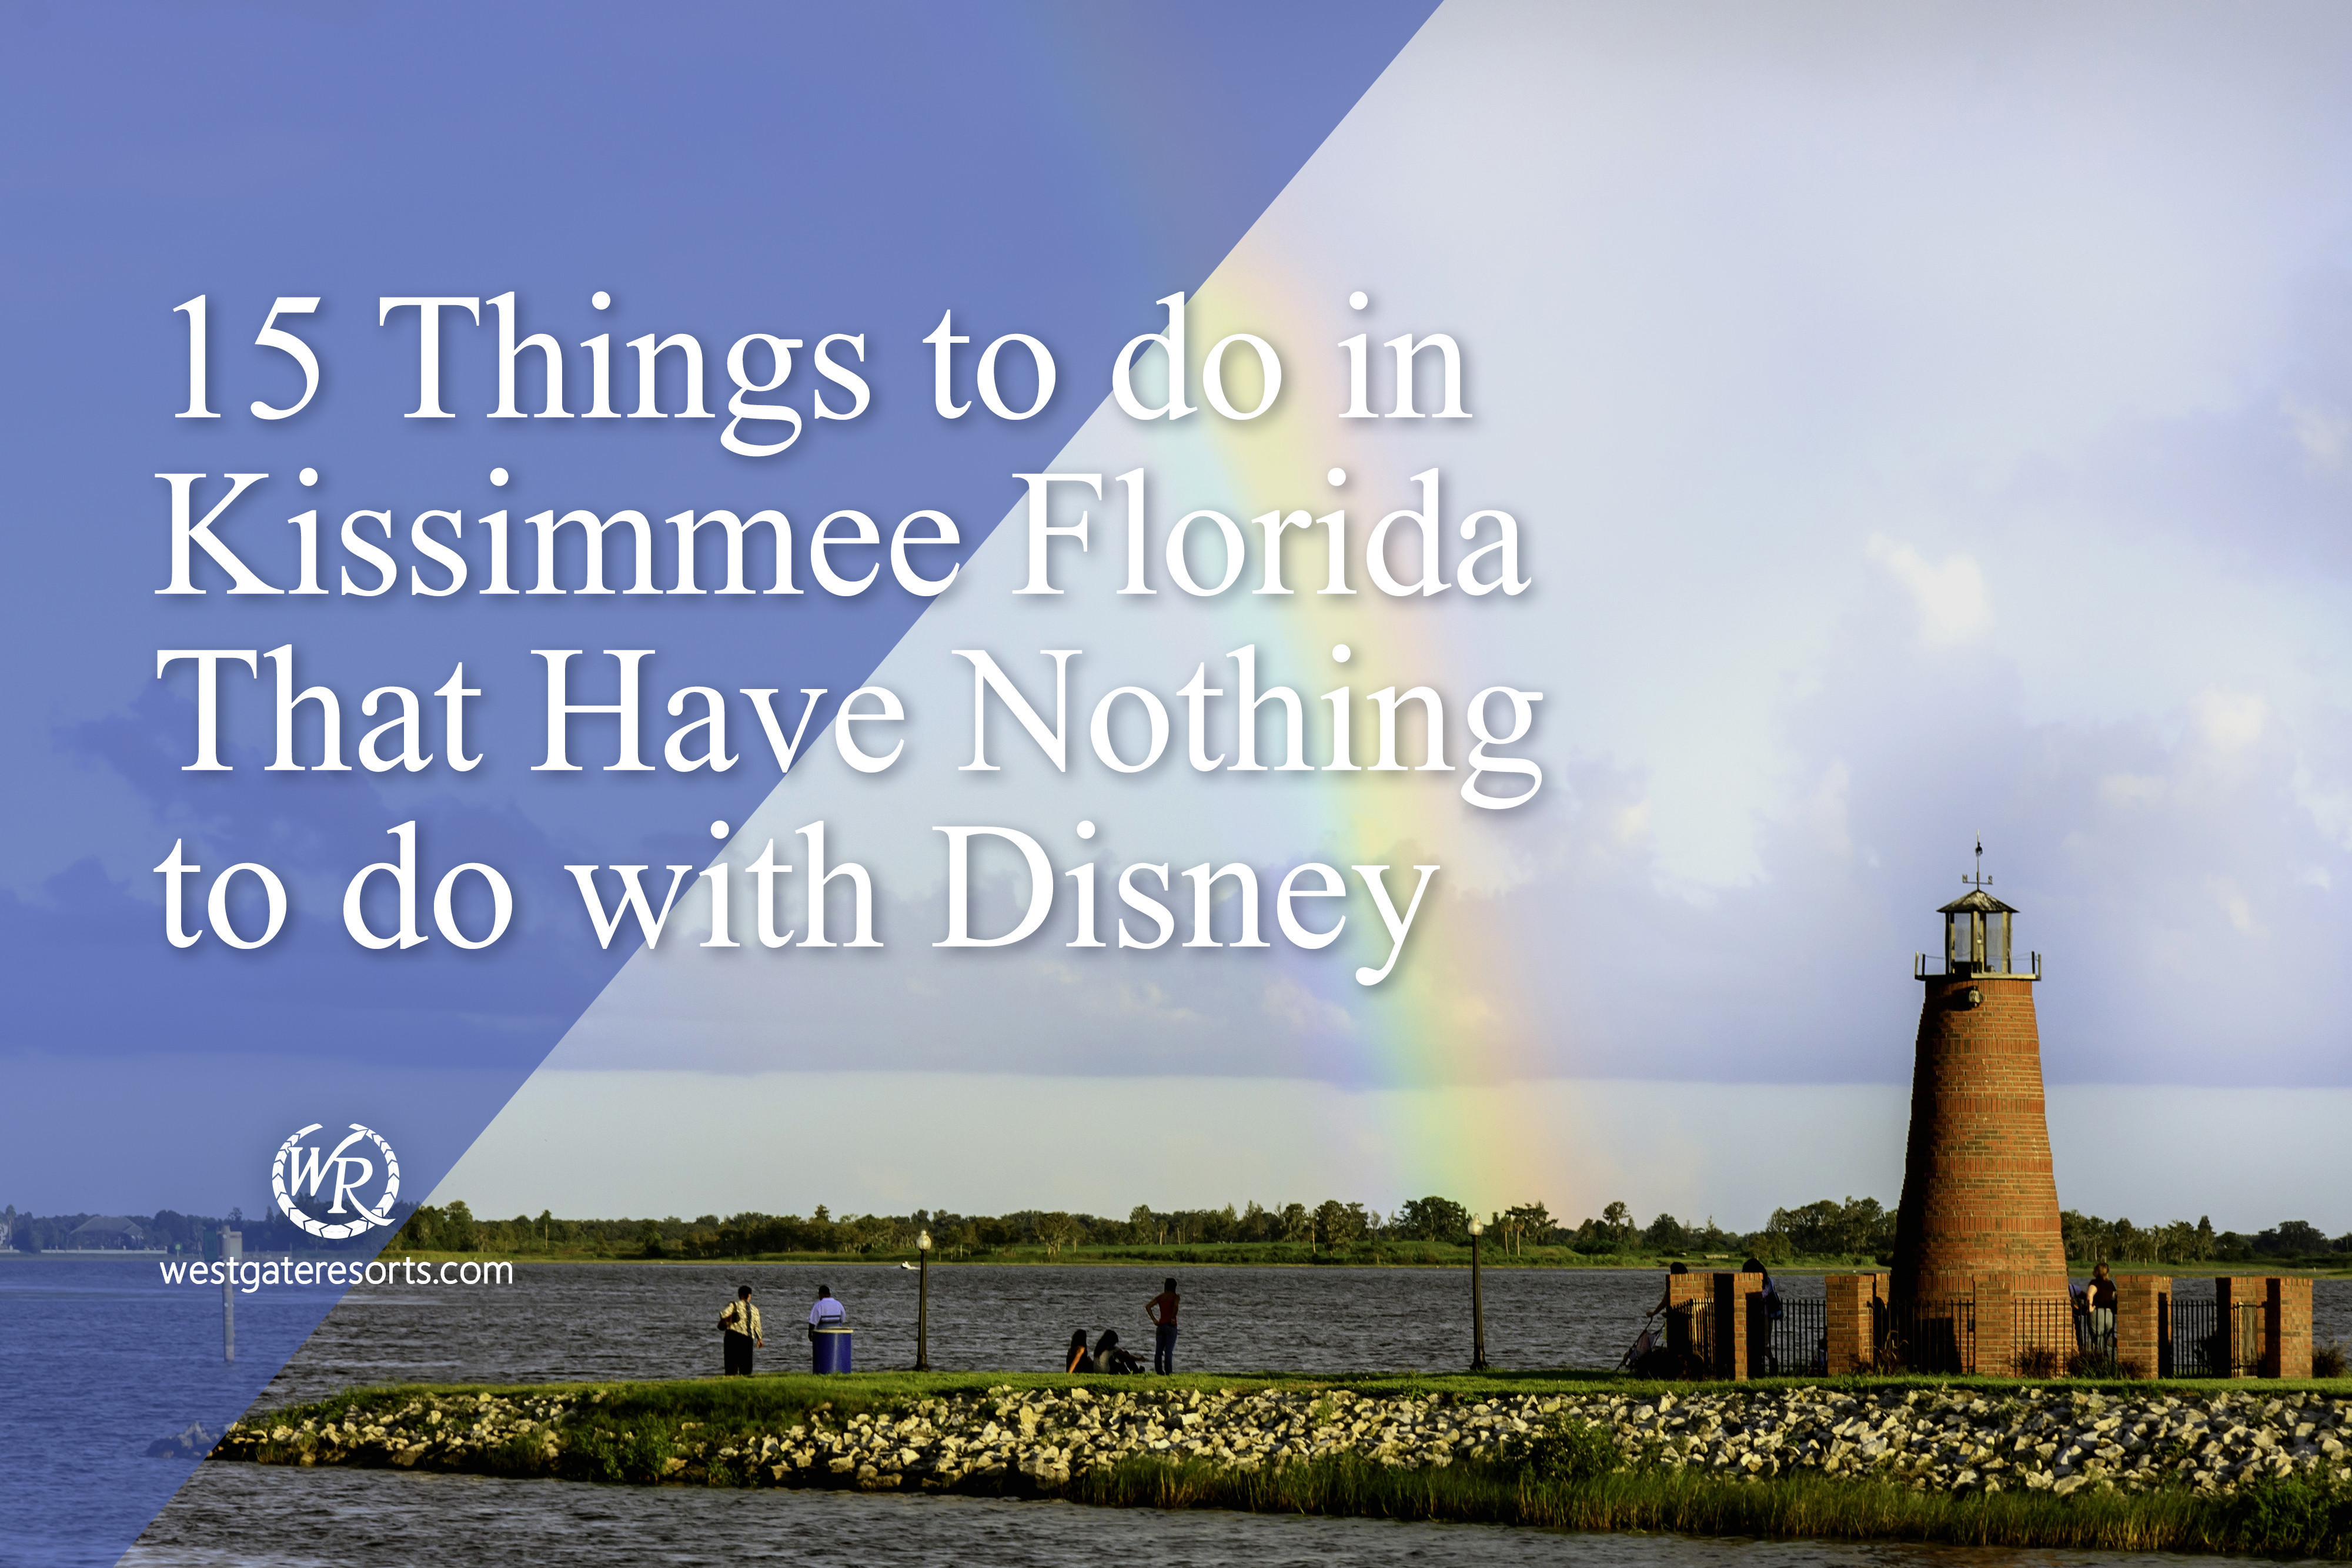 15 cosas que hacer en Kissimmee Florida que no tienen nada que ver con Disney